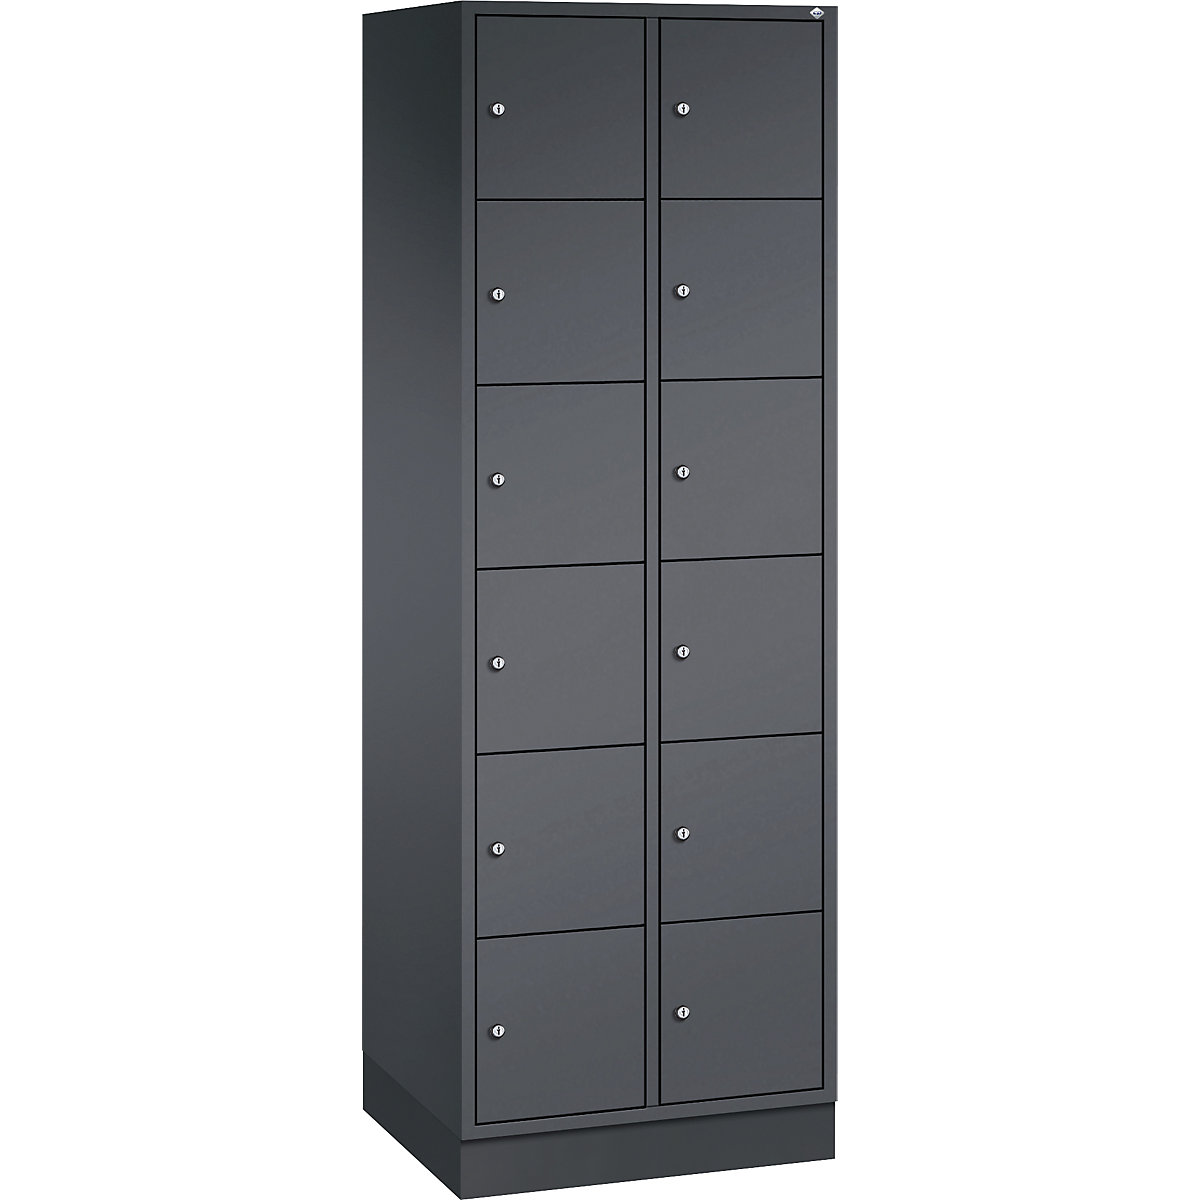 Vestiaire multicases en acier INTRO, casiers hauteur 285 mm – C+P, l x p 620 x 500 mm, 12 casiers, corps gris noir, portes gris noir-7